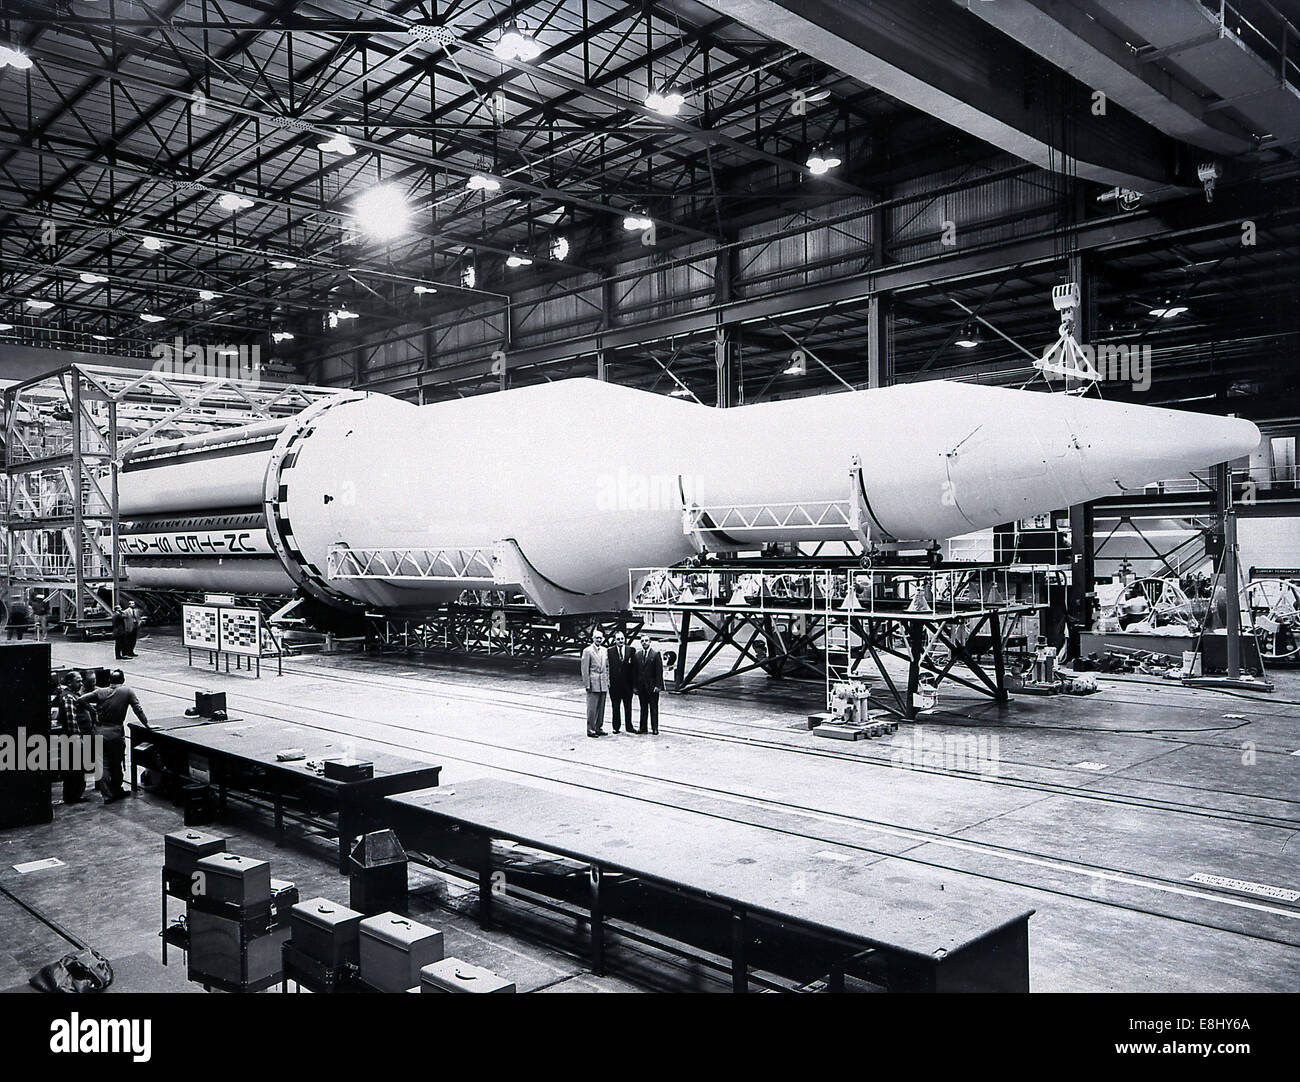 Le 27 octobre 1961, le pays considéré comme le premier véhicule Saturn, SA-1, a décollé de Cap Canaveral et a grimpé à une alt Banque D'Images